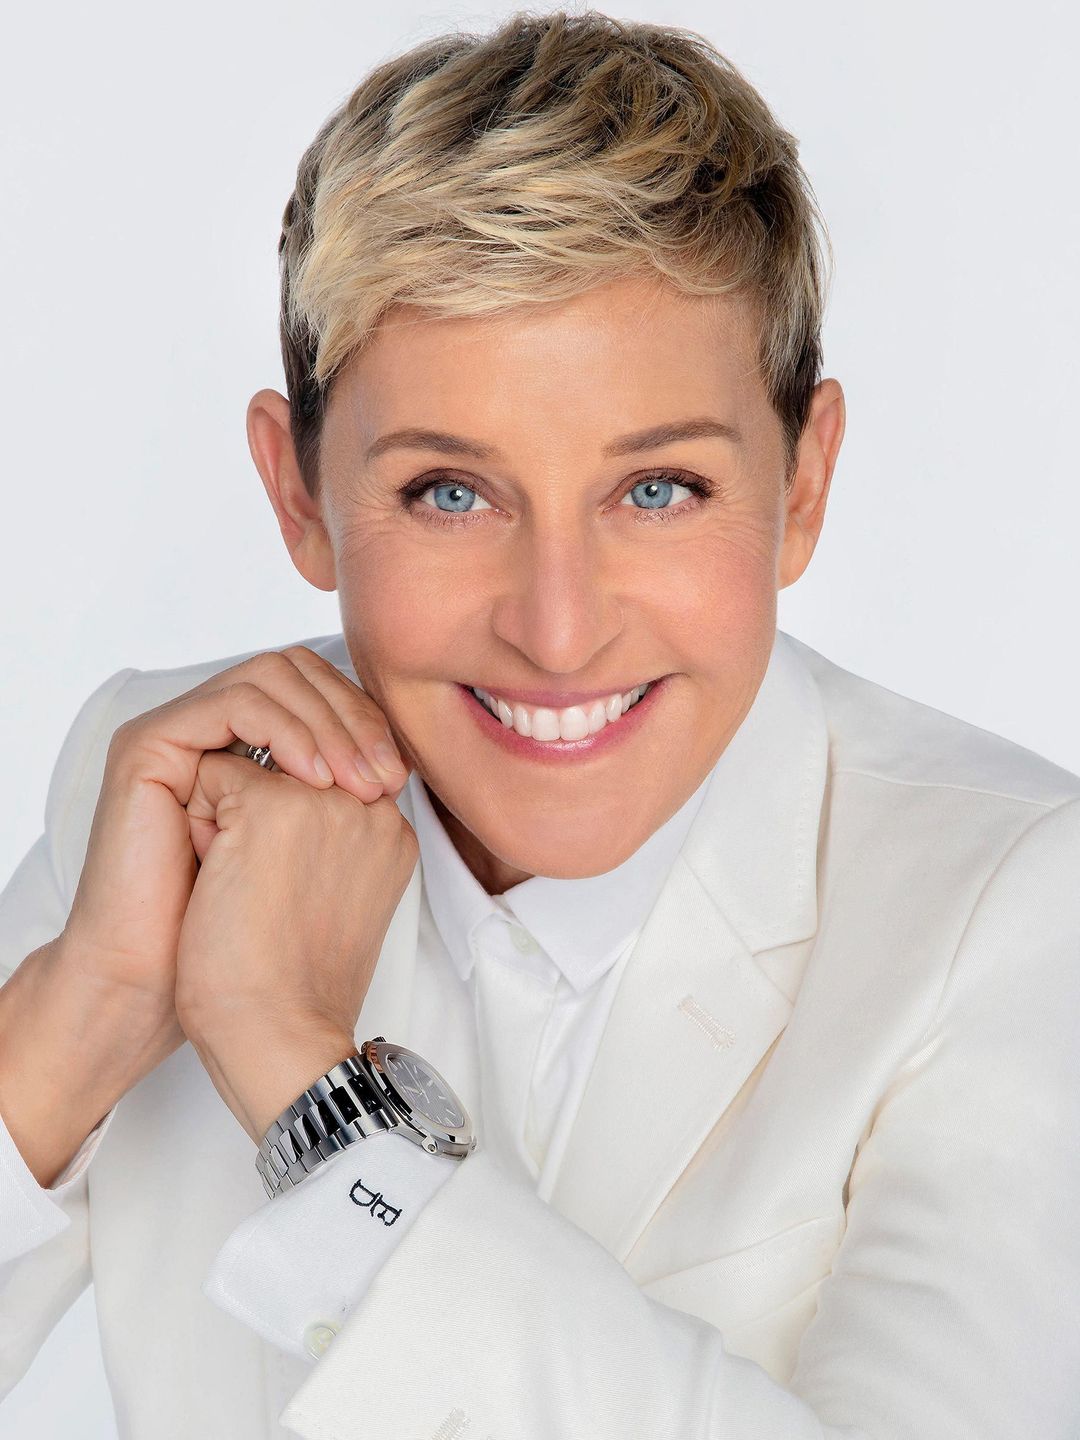 Ellen DeGeneres personal life